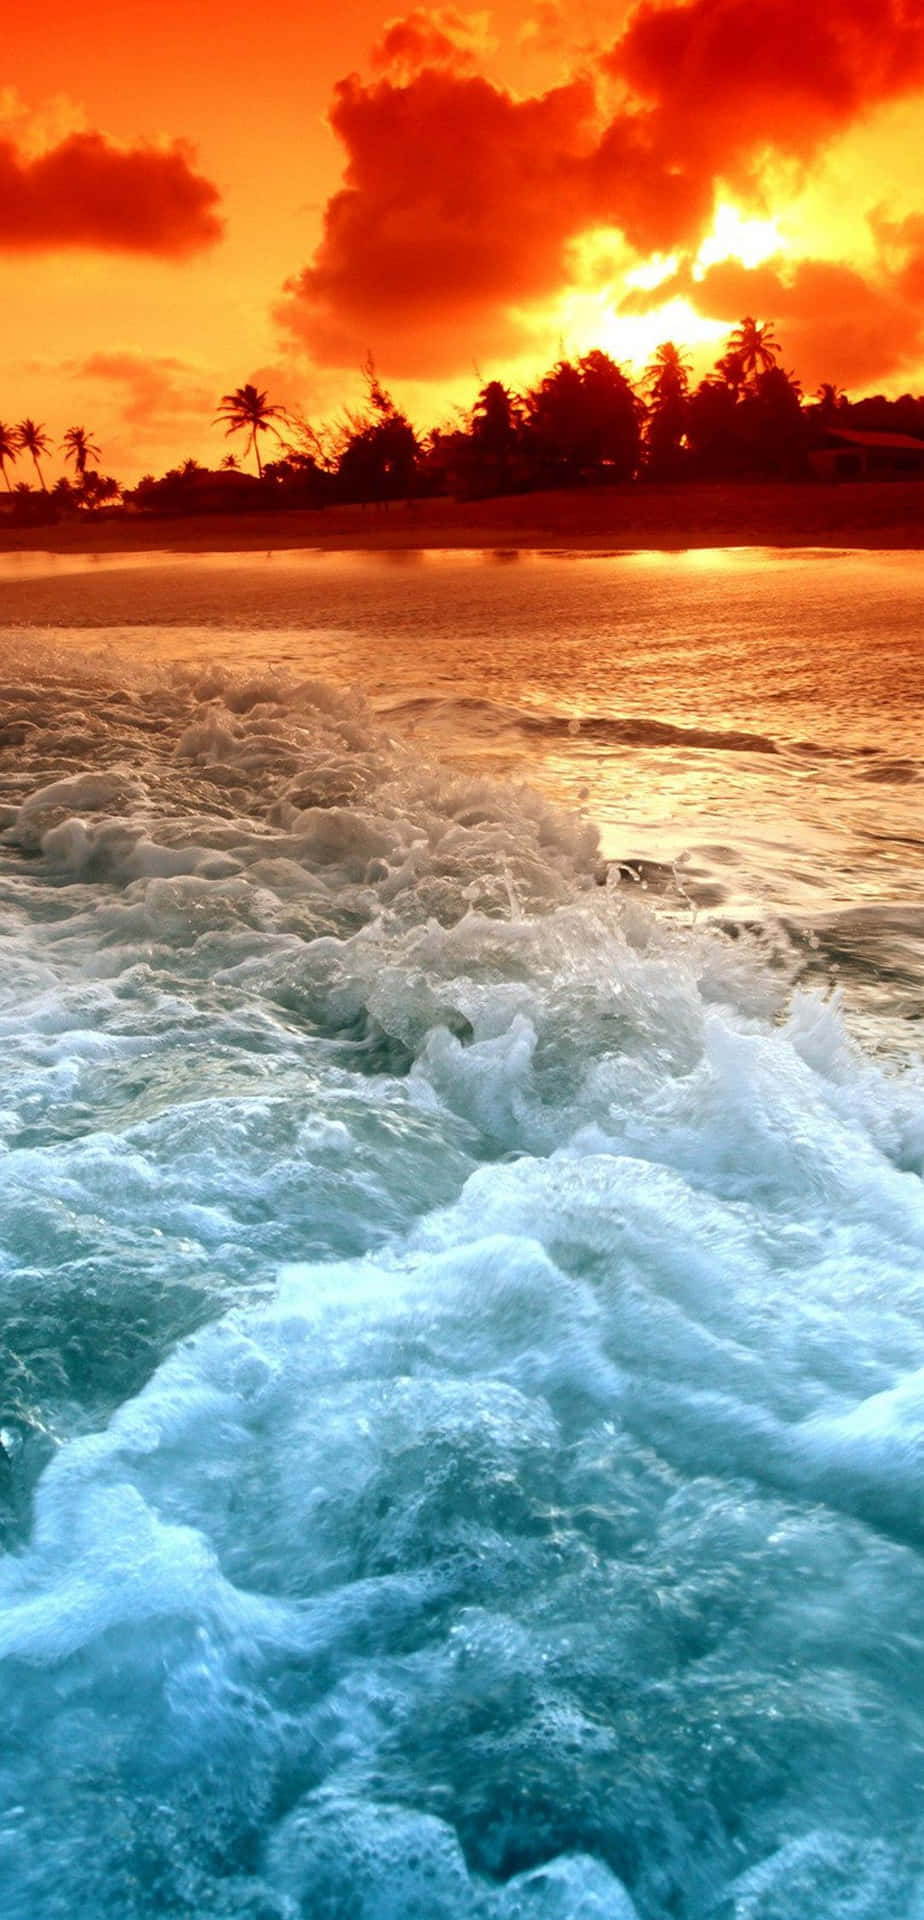 Dasparadies Erwartet Dich - Eine Atemberaubende Strandszene In Einem Tropischen Paradies. Wallpaper